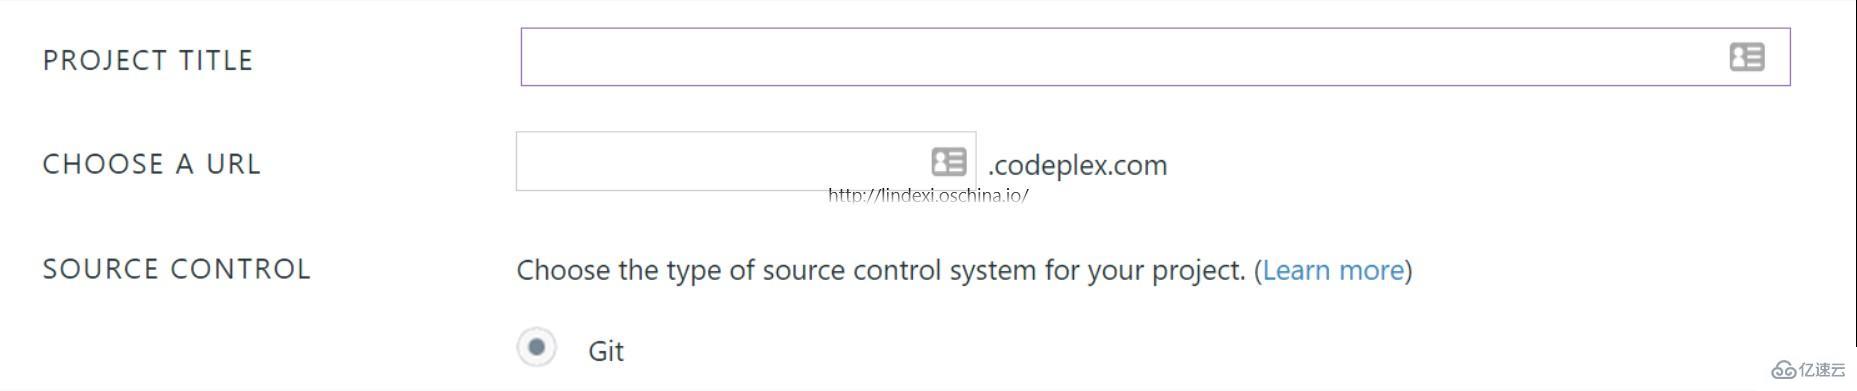 微软开源项目网站CodePlex有什么用